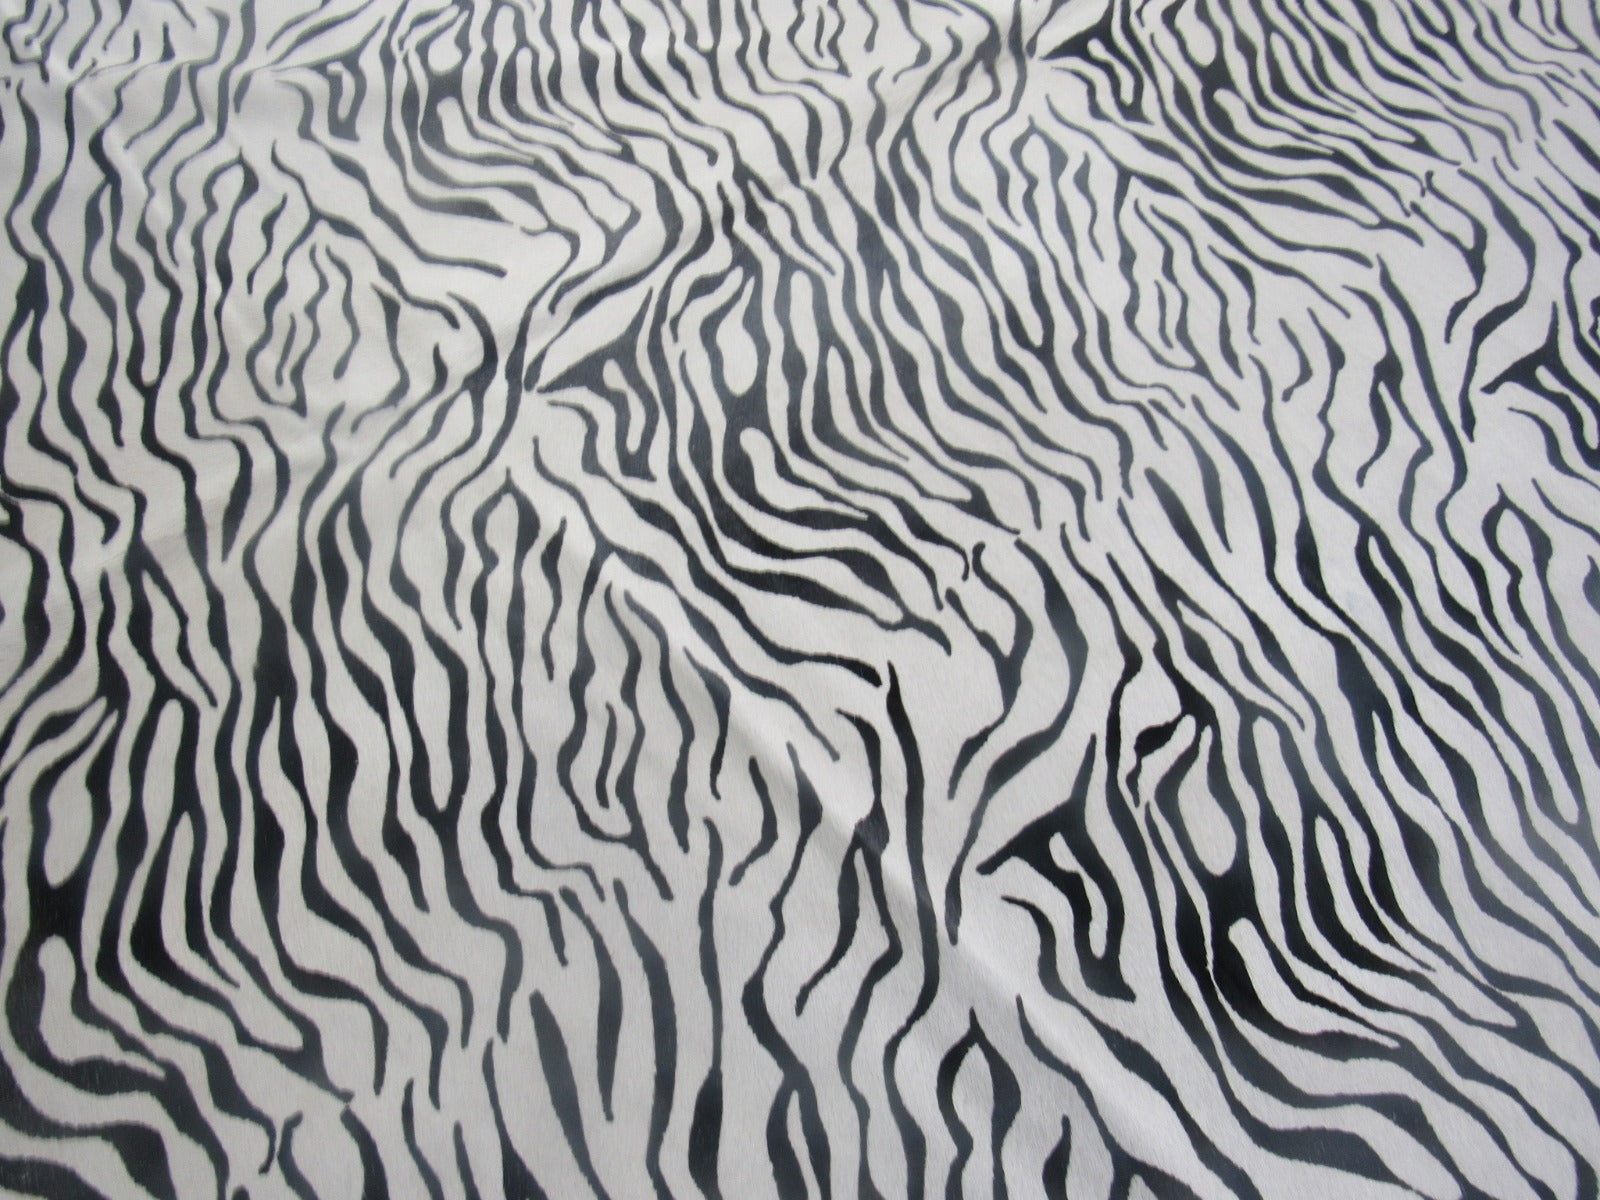 Baby Zebra Print Cowhide Rug Size: 7 1/2' X 6' Black/White Zebra Cowhide Rug C-1523